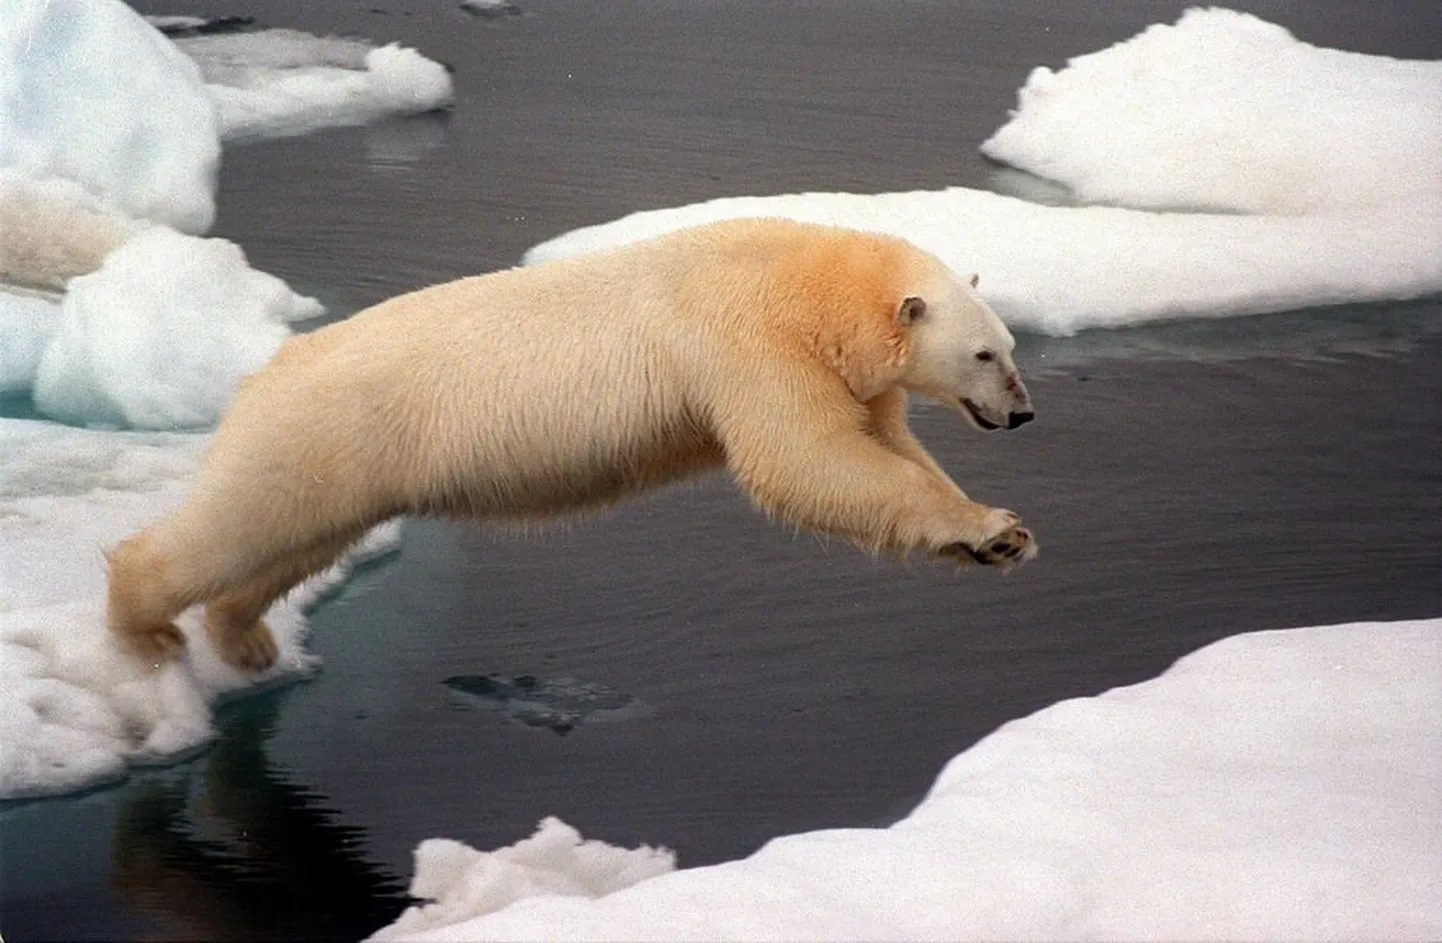 Сегодняшнее изменение климата угрожает хрупкой экосистеме арктического региона, и перспективы белых медведей, как и других видов, безрадостны. Профессор Волли Калм сегодня рассказывает об изменениях климата в прошлом в Музее истории UT.